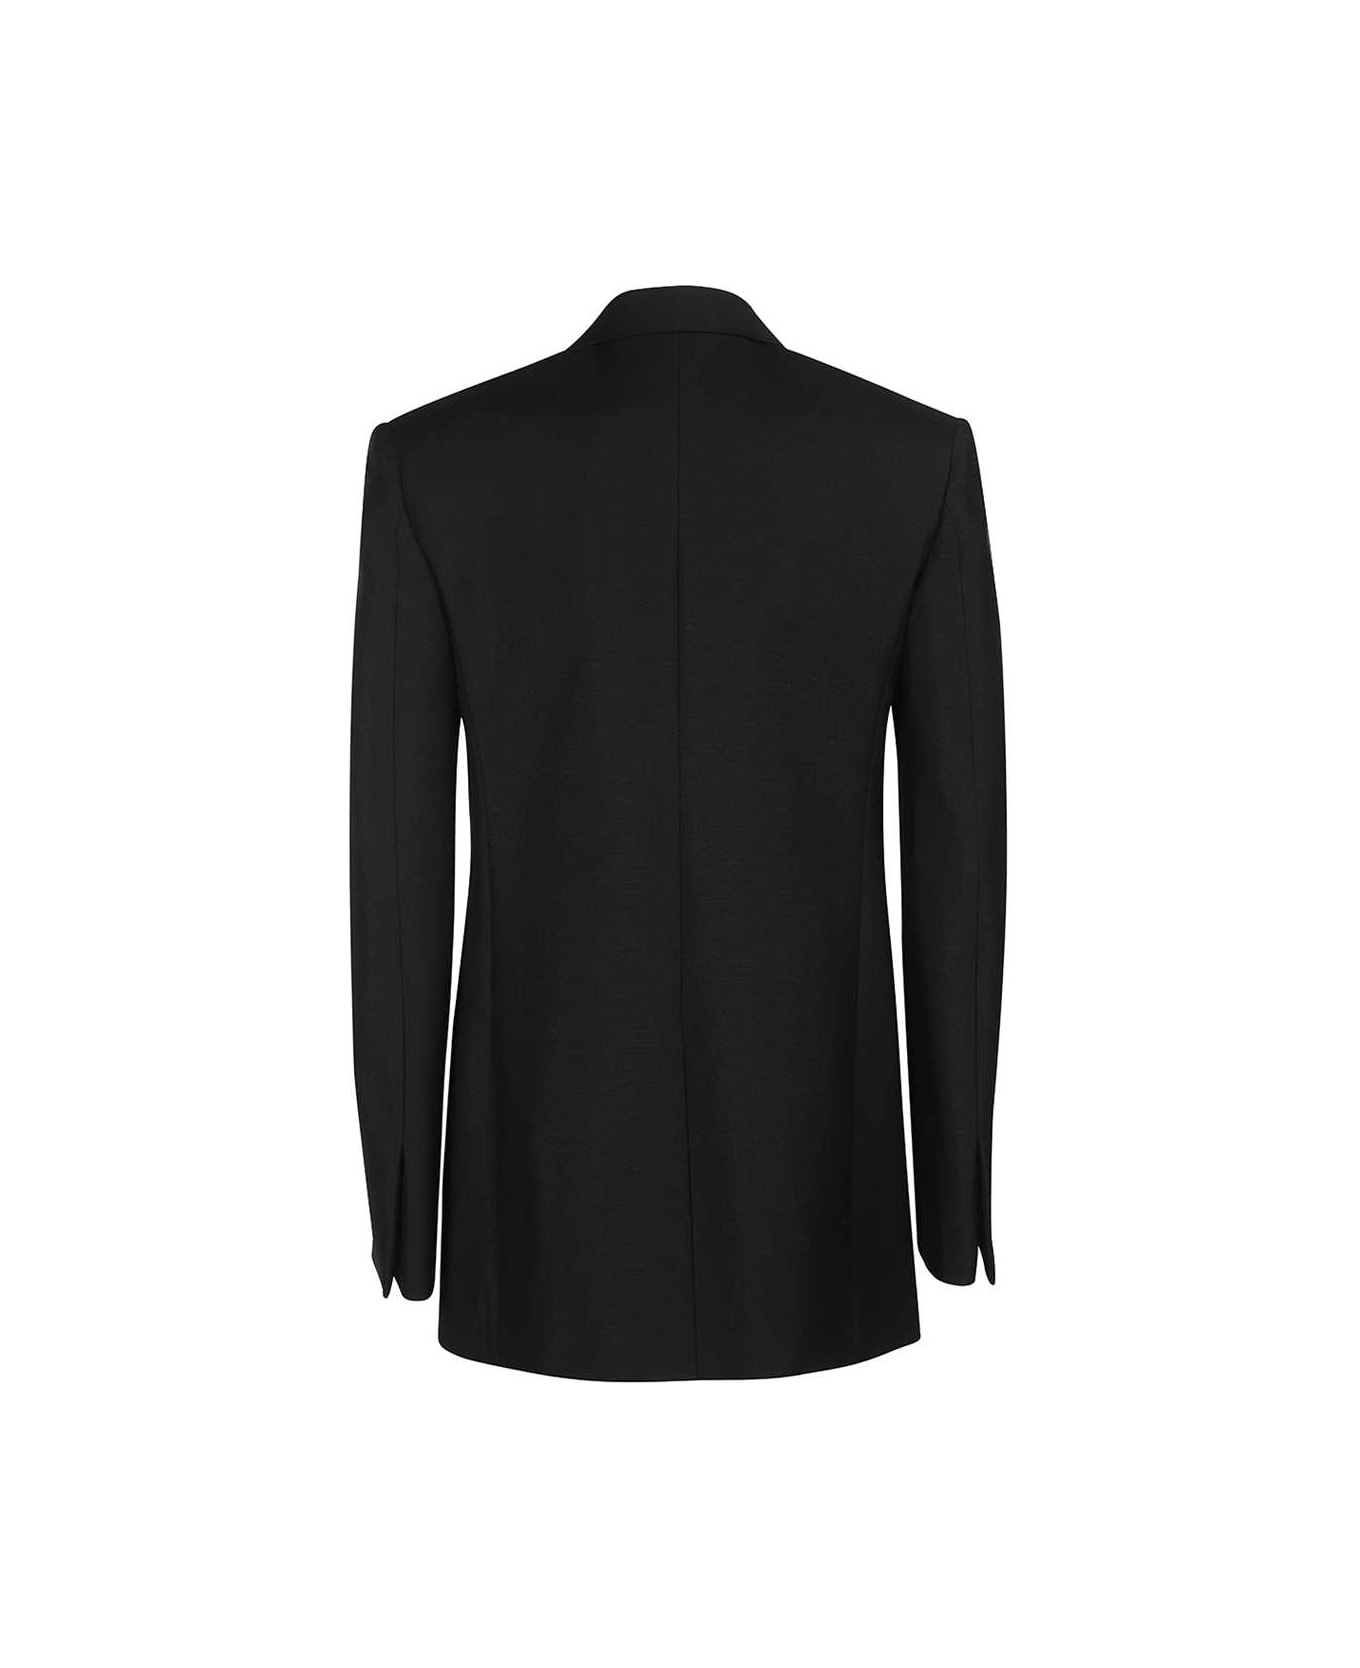 Givenchy Wool Blazer - black ブレザー